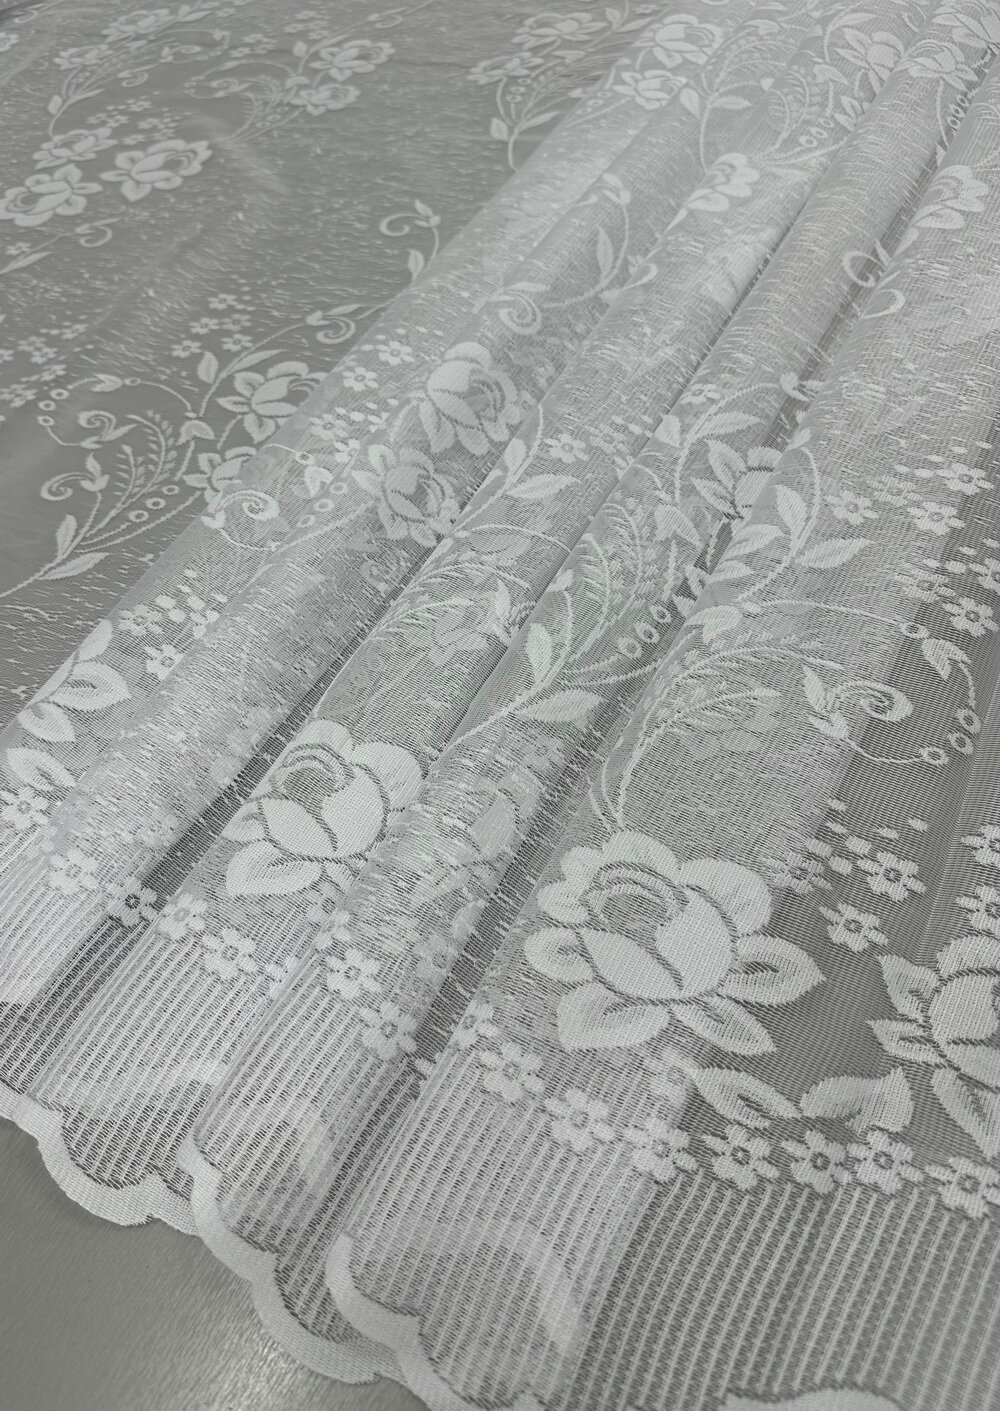 Ткань для штор Viva текстиль/тюль жаккард высота 100 см на отрез 1 метра ткань отправляется единым метражом в одном заказе